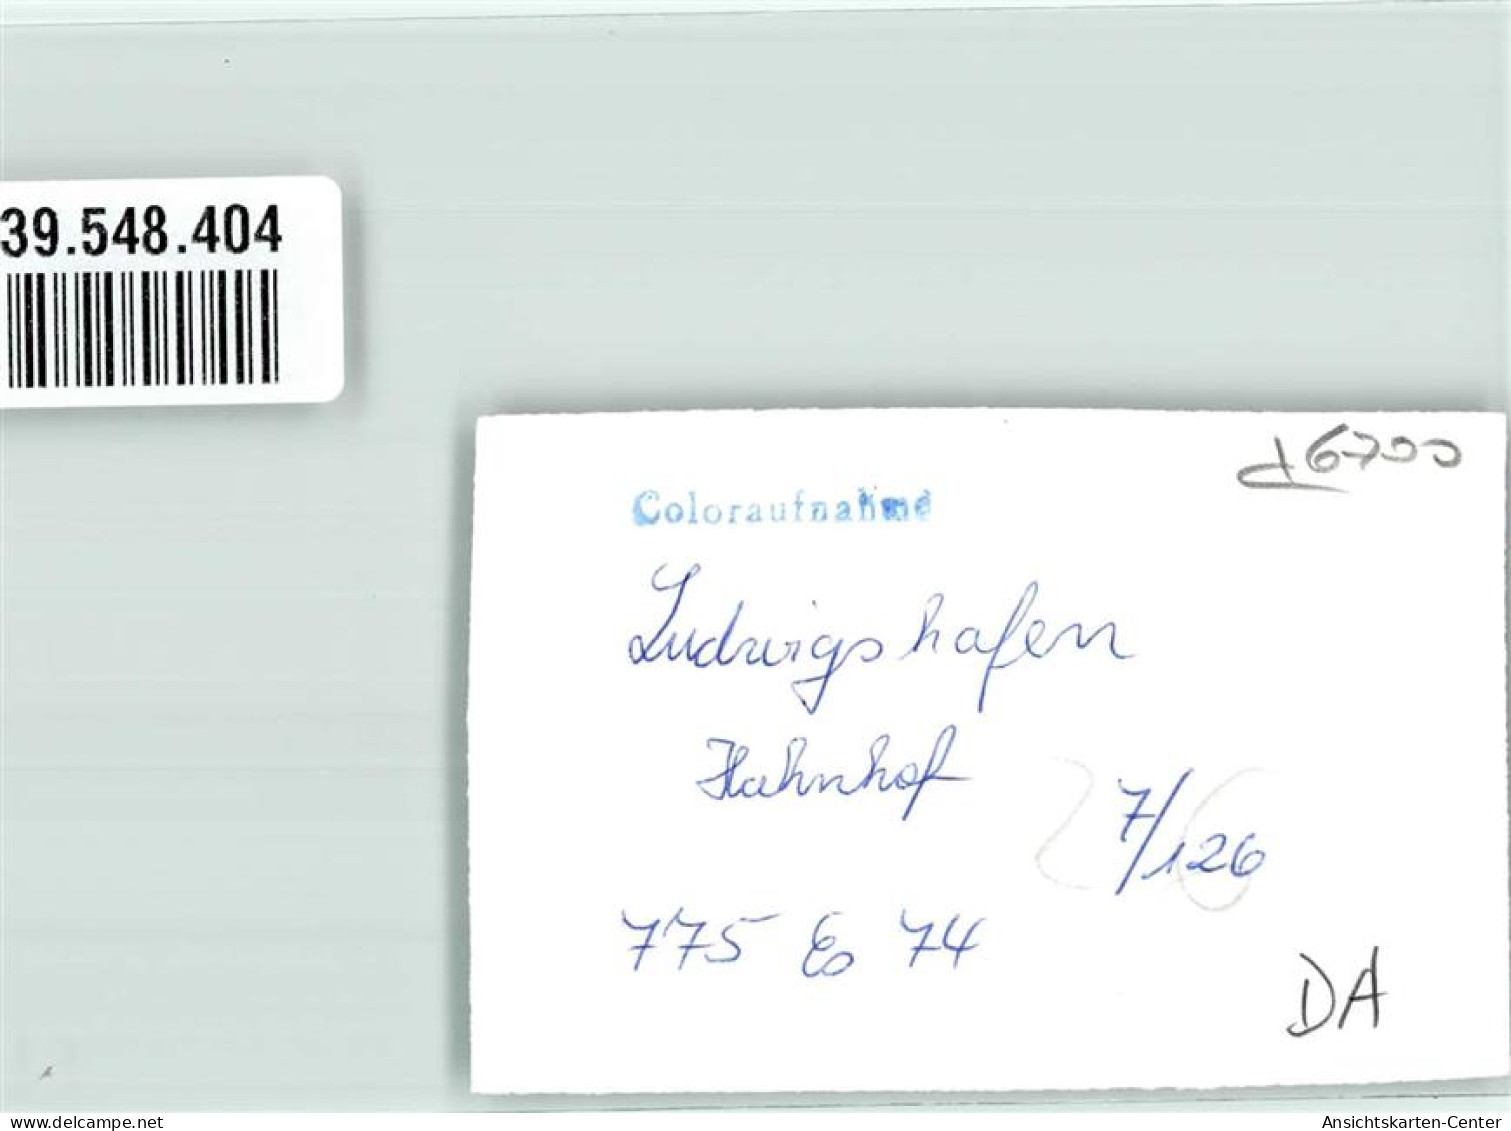 39548404 - Ludwigshafen Am Rhein - Ludwigshafen